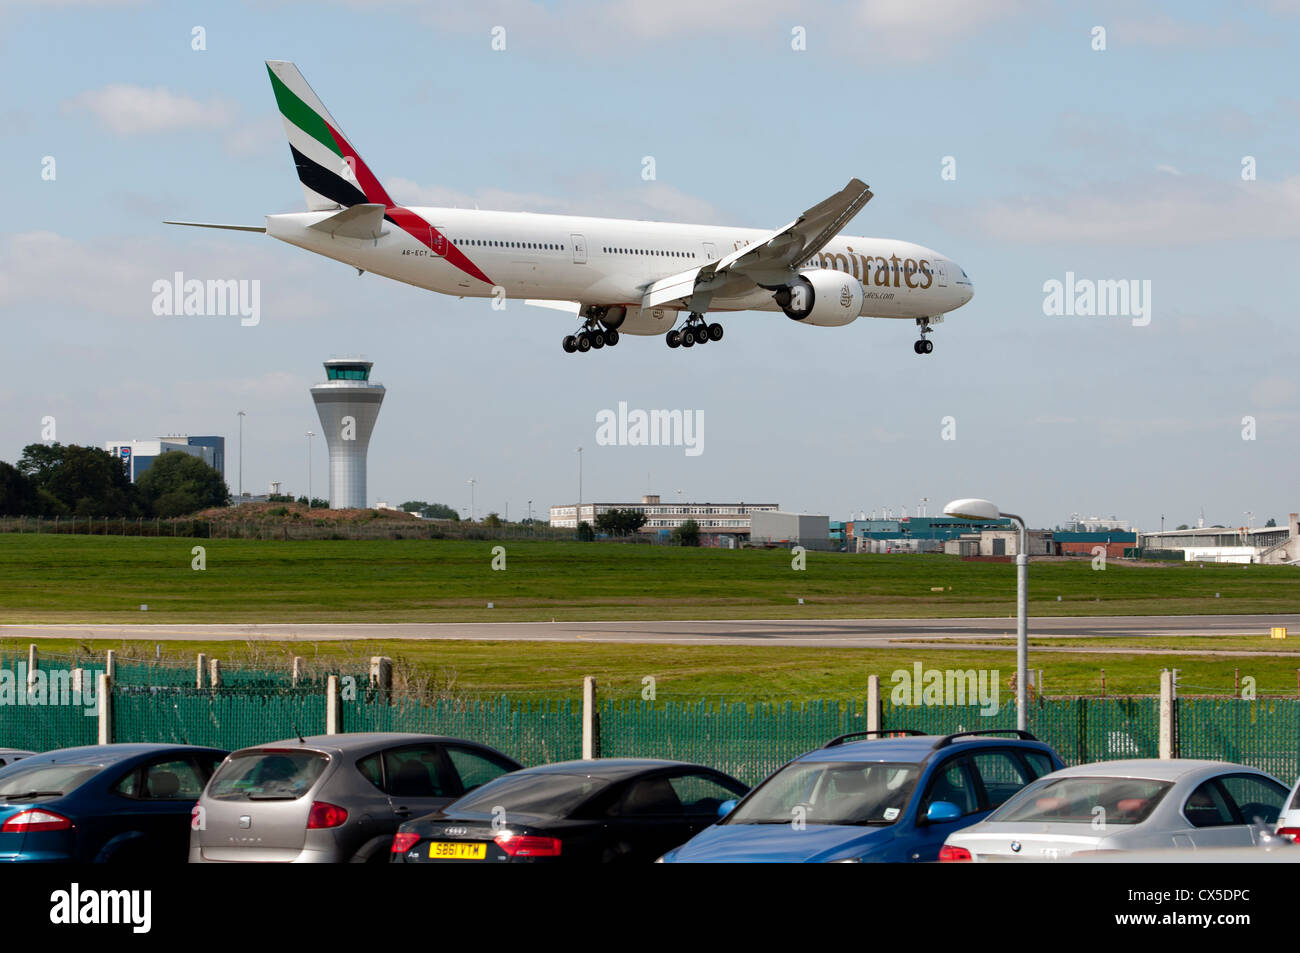 Emiratos Boeing 777 aviones que aterrizan en el aeropuerto de Birmingham Foto de stock